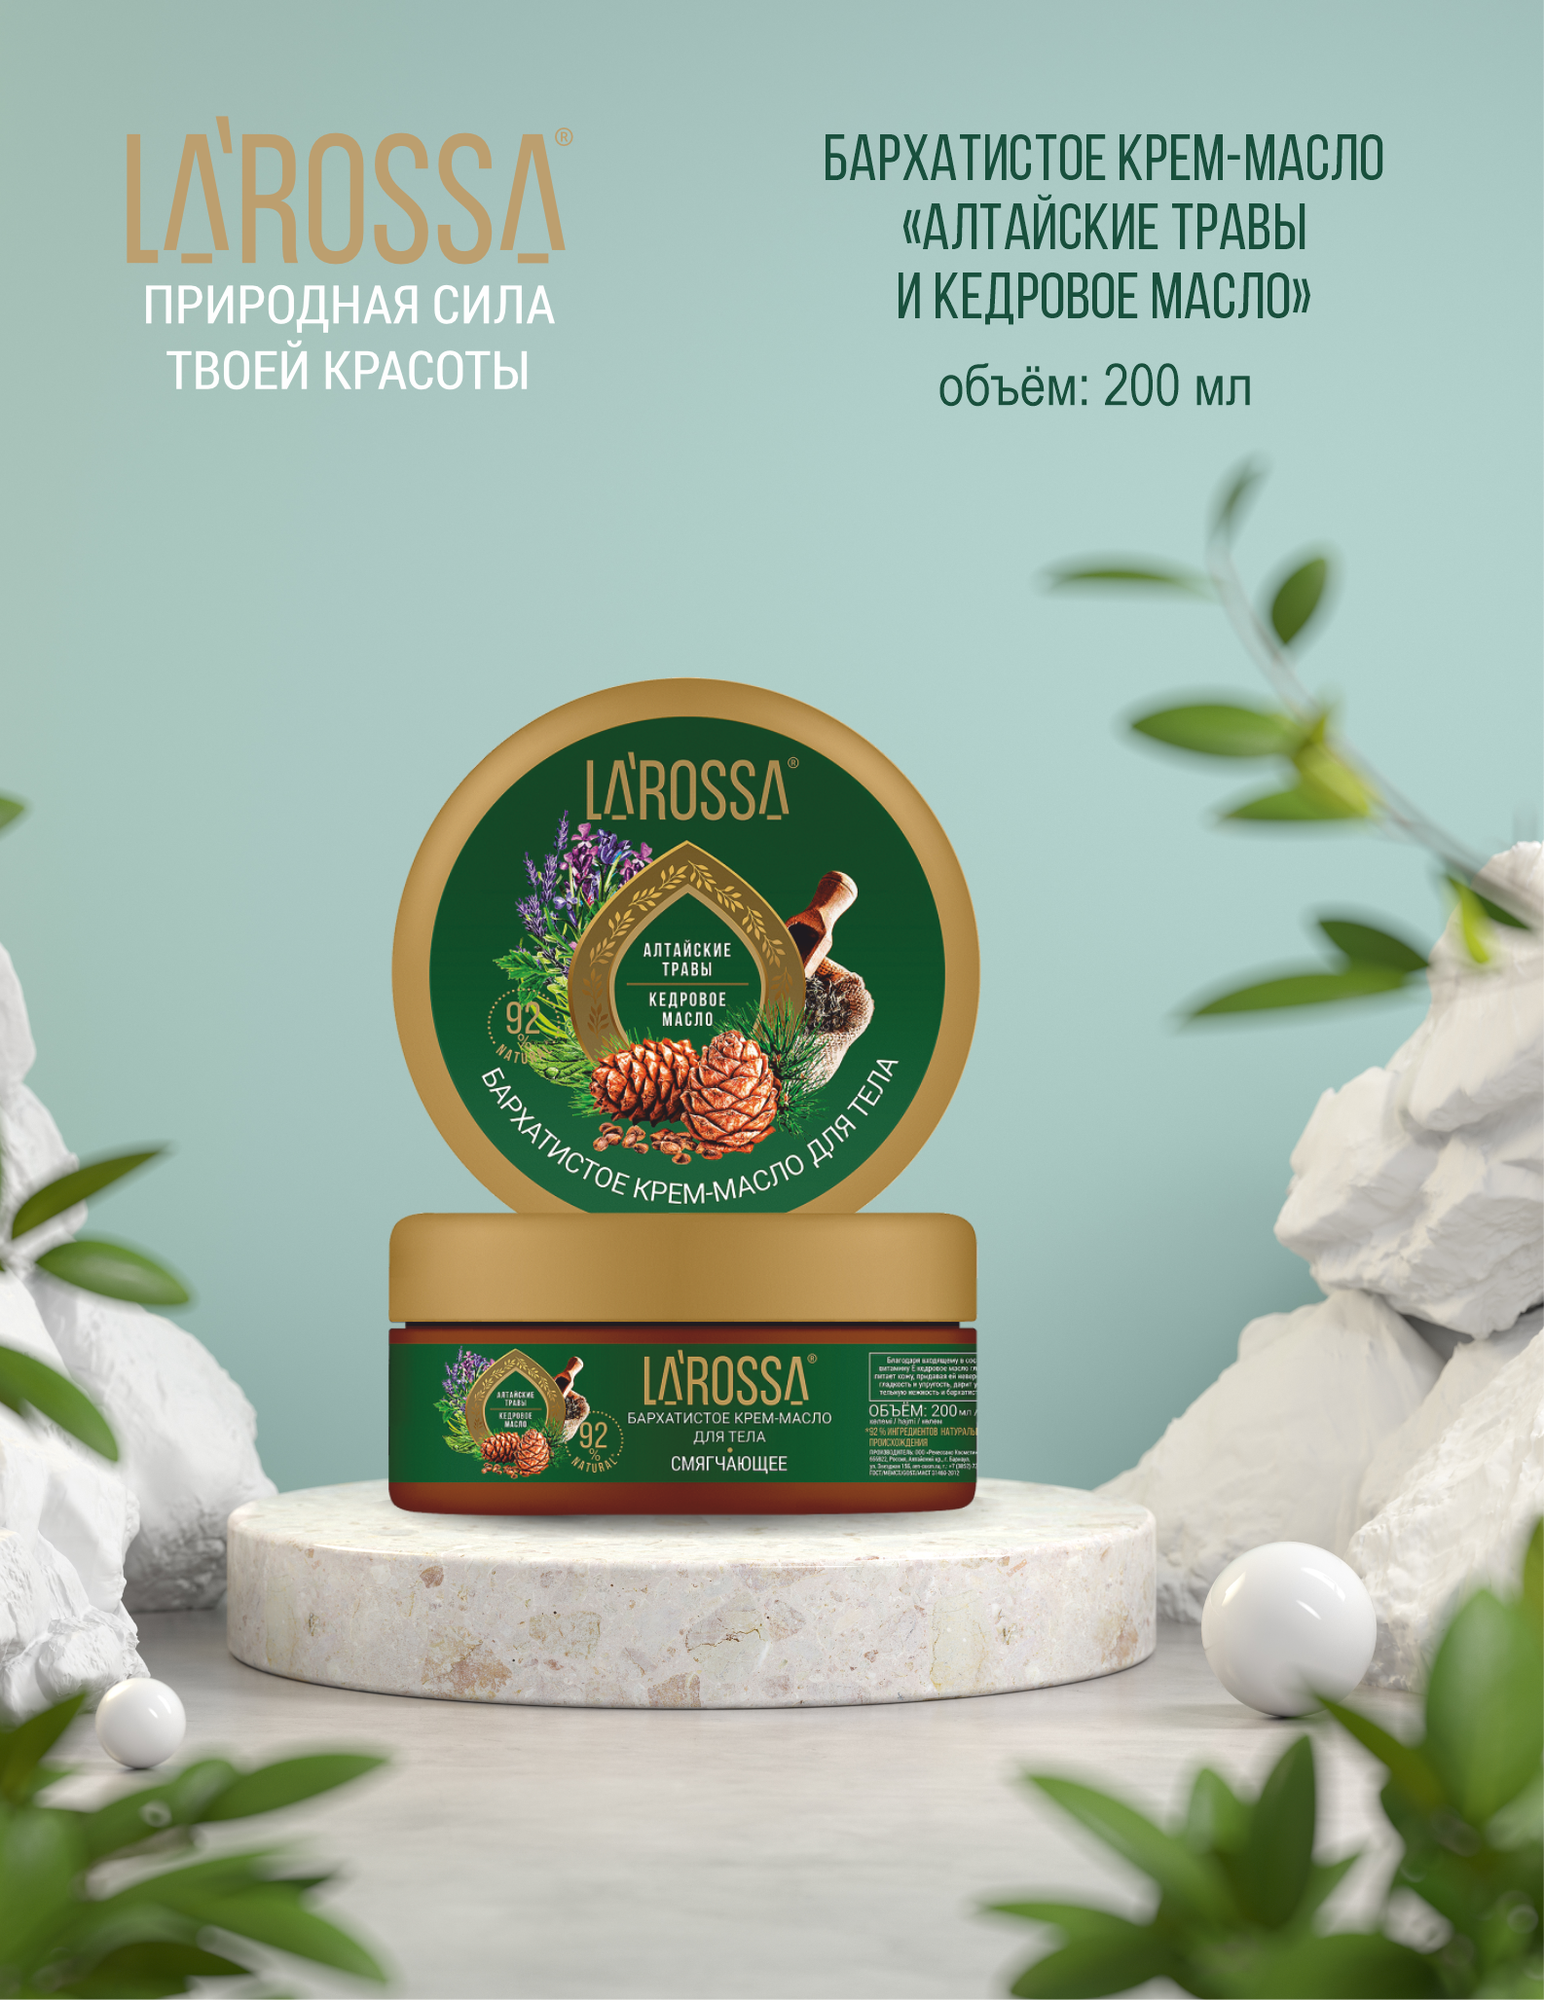 Larossa Крем-масло для тела Бархатистое, алтайские травы и кедровое масло, 200 мл